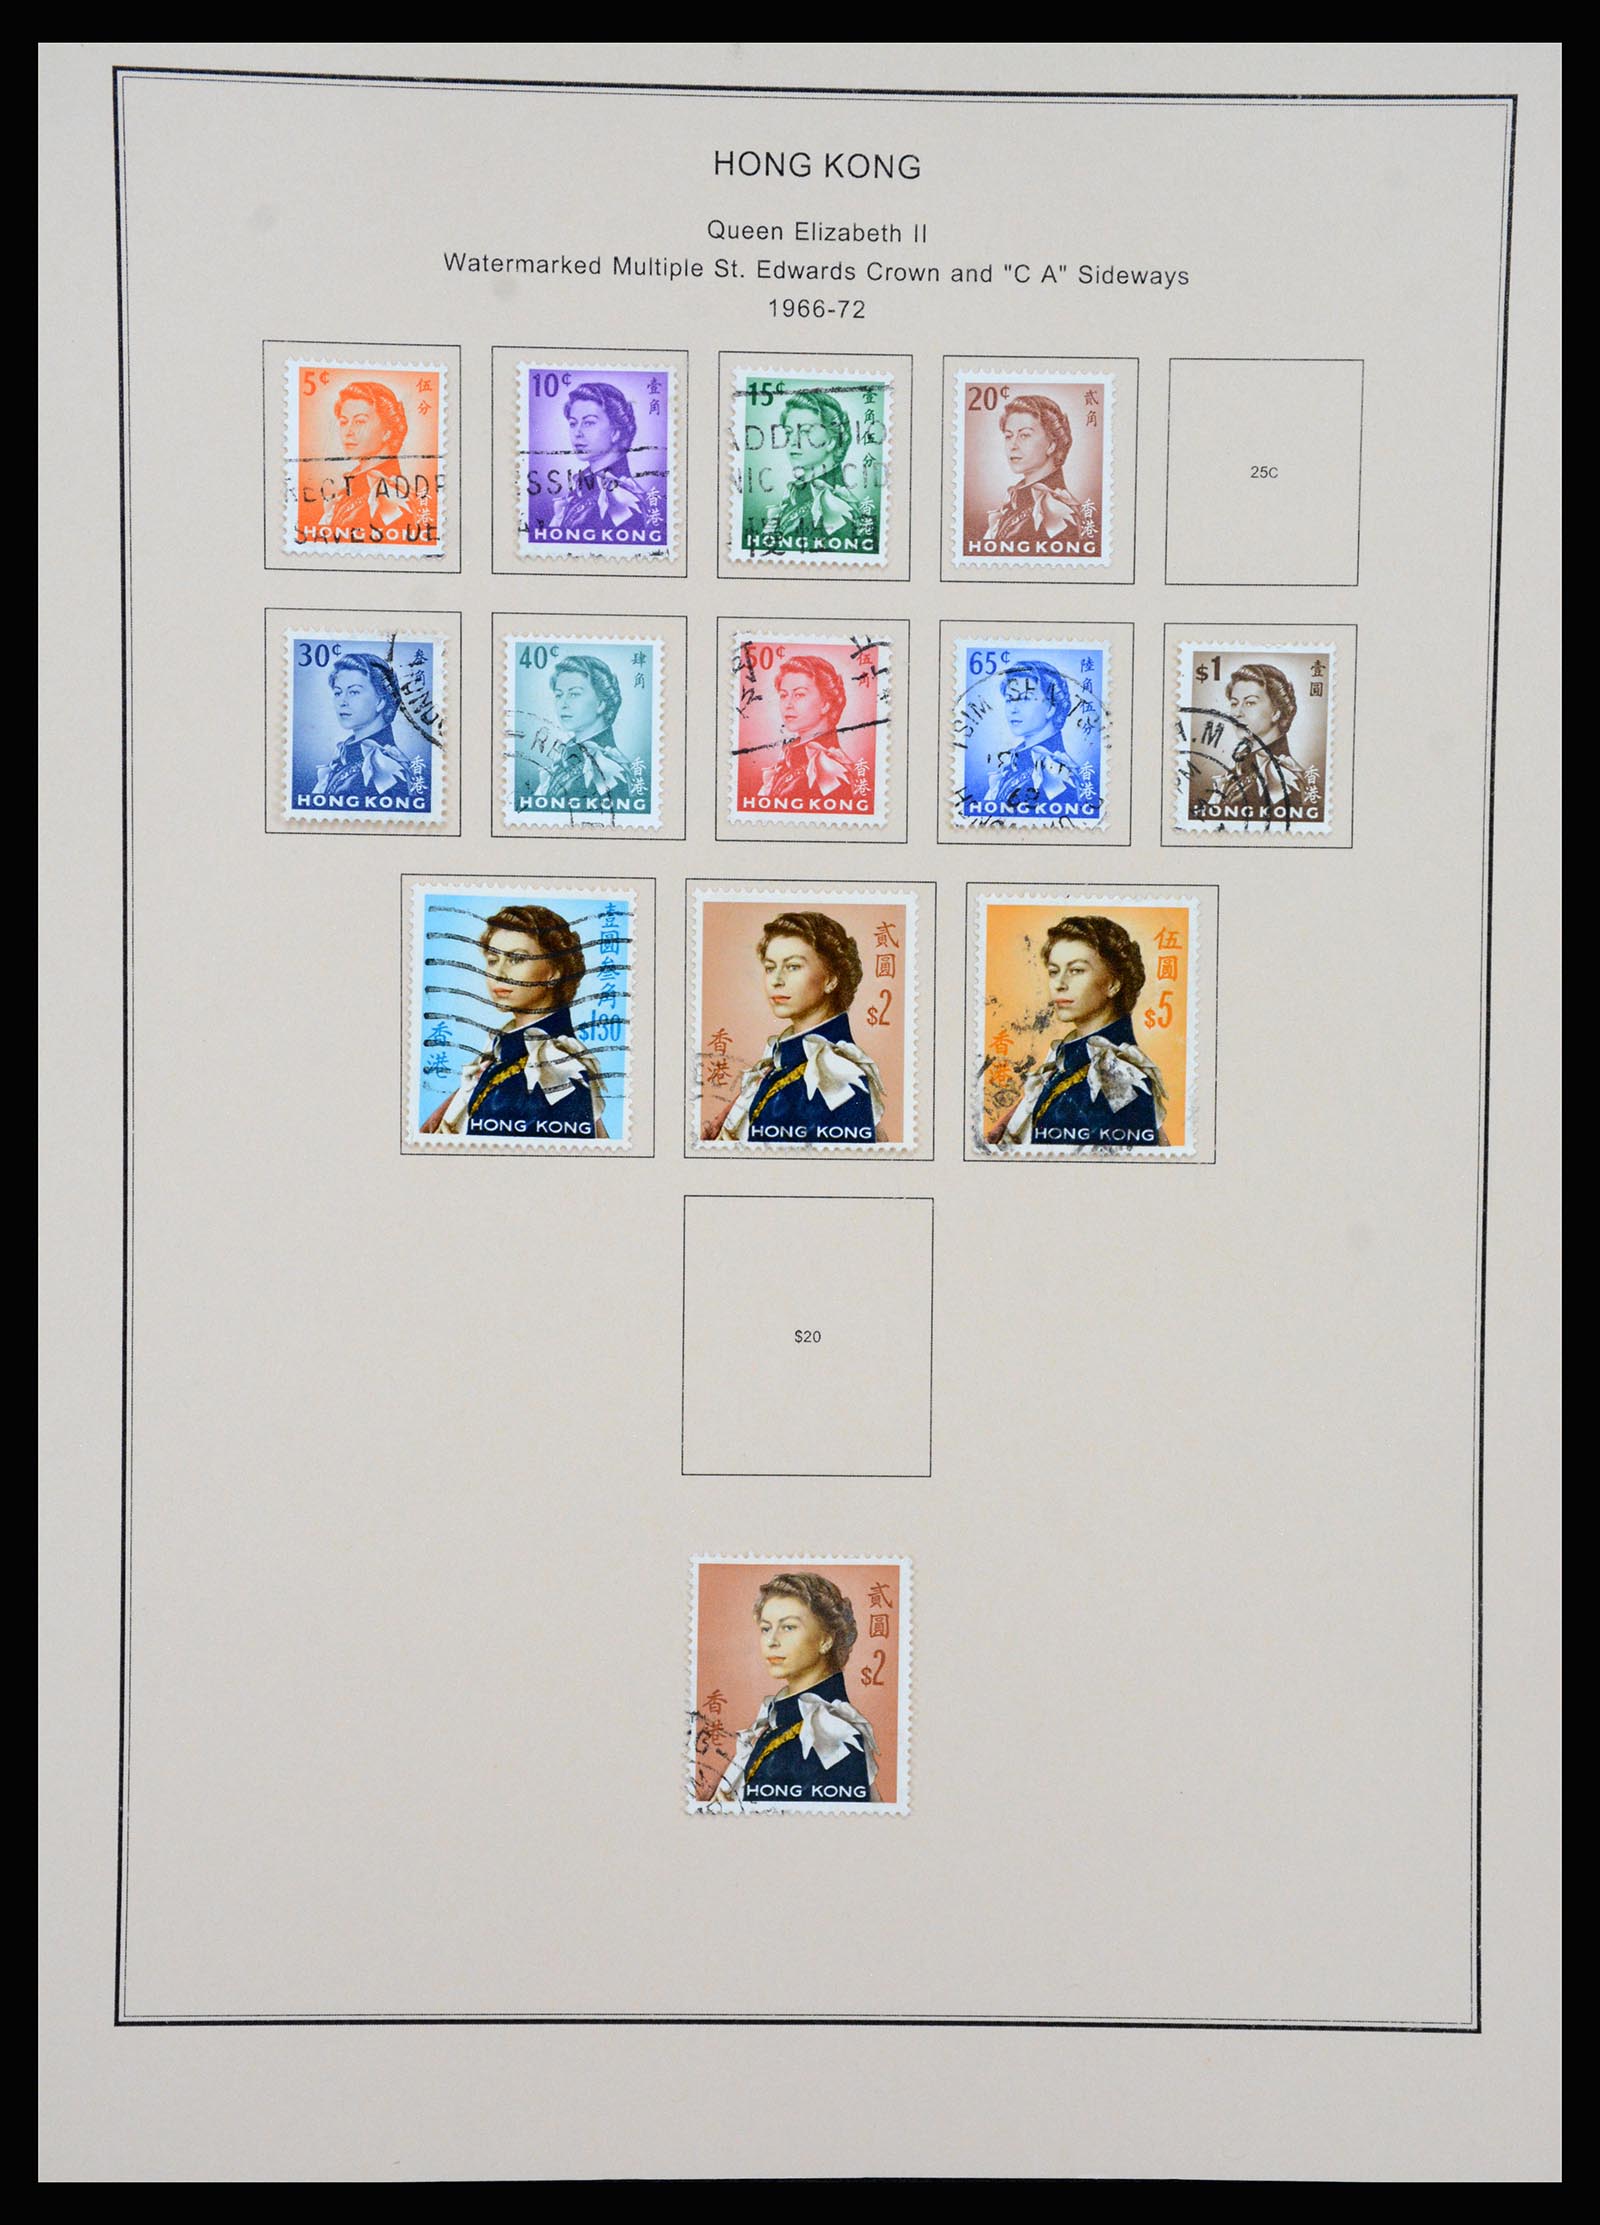 37210 017 - Stamp collection 37210 Hong Kong 1862-2000.